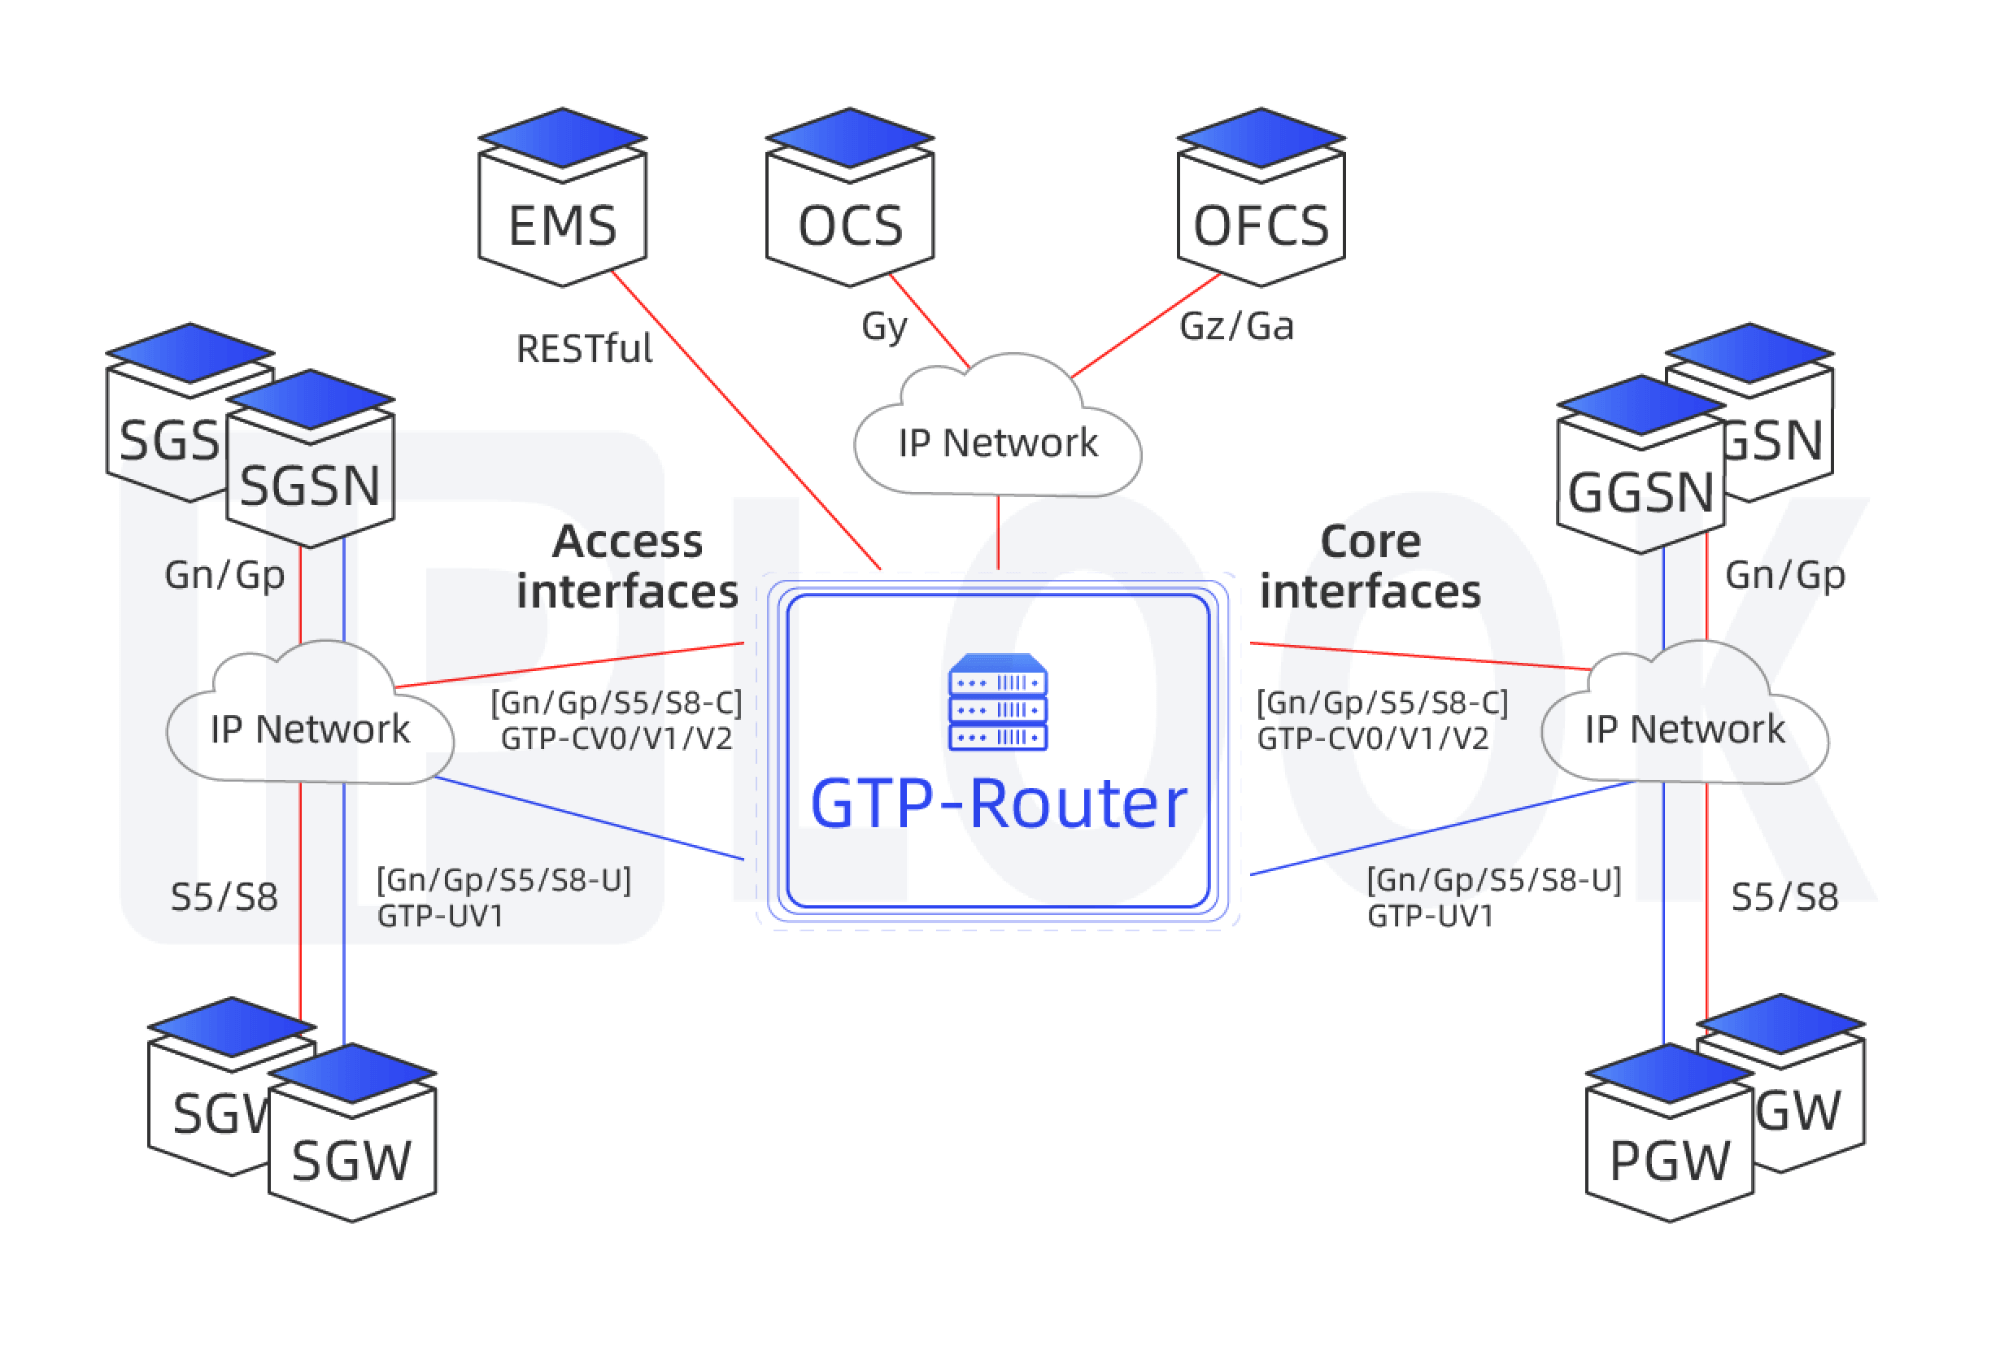 GTP-Routeur